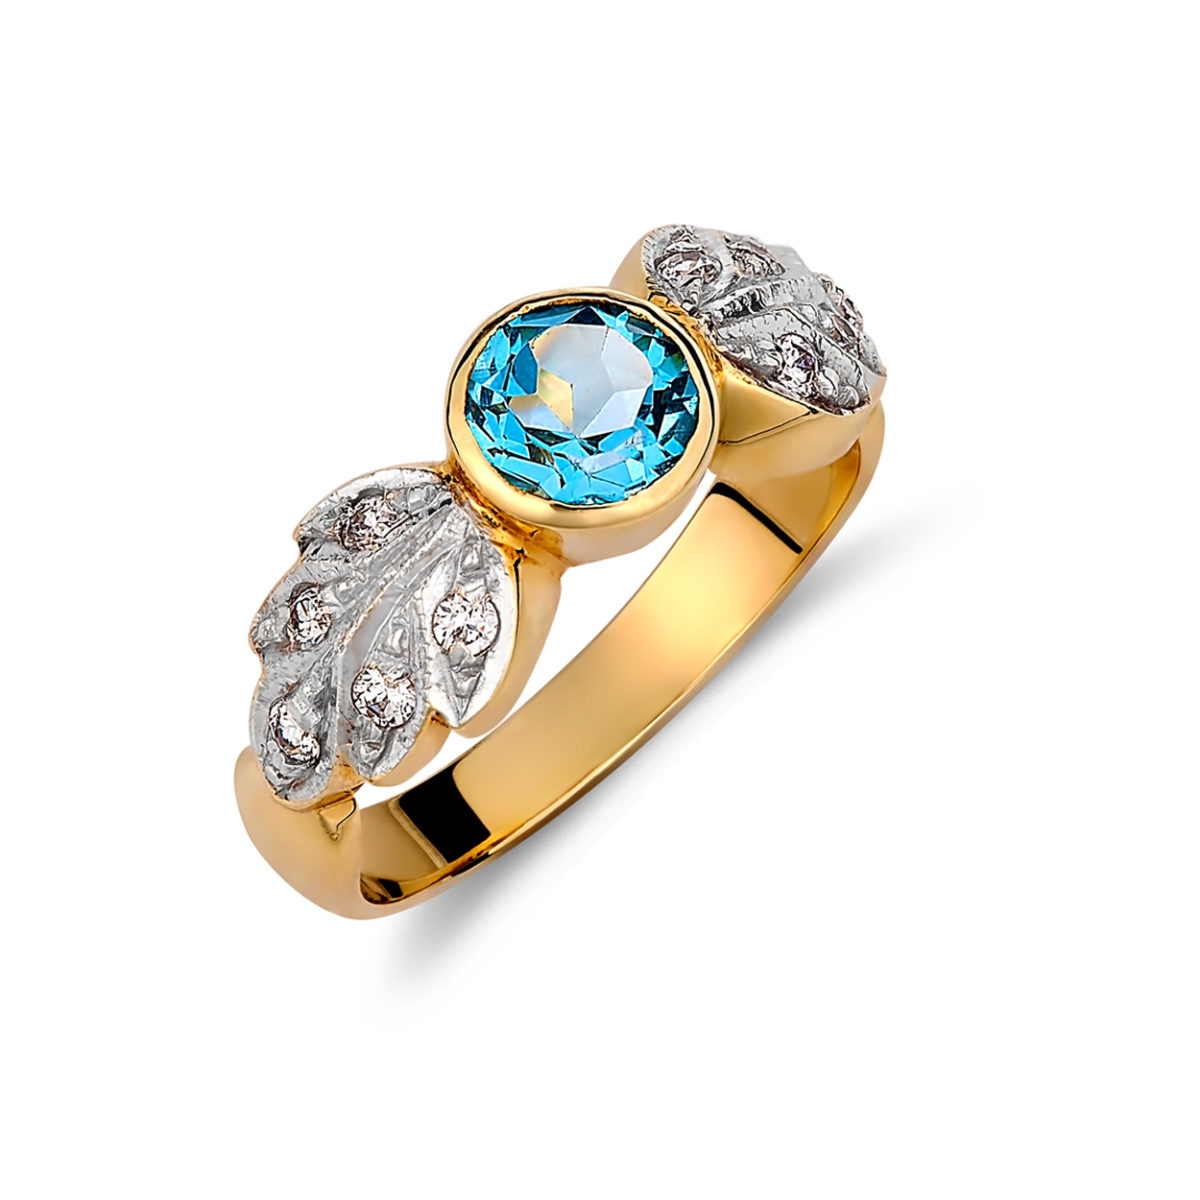 Δαχτυλίδι Χρυσό Και Λευκόχρυσο Με Ζιργκόν Και Μπλε Τοπάζι 14K